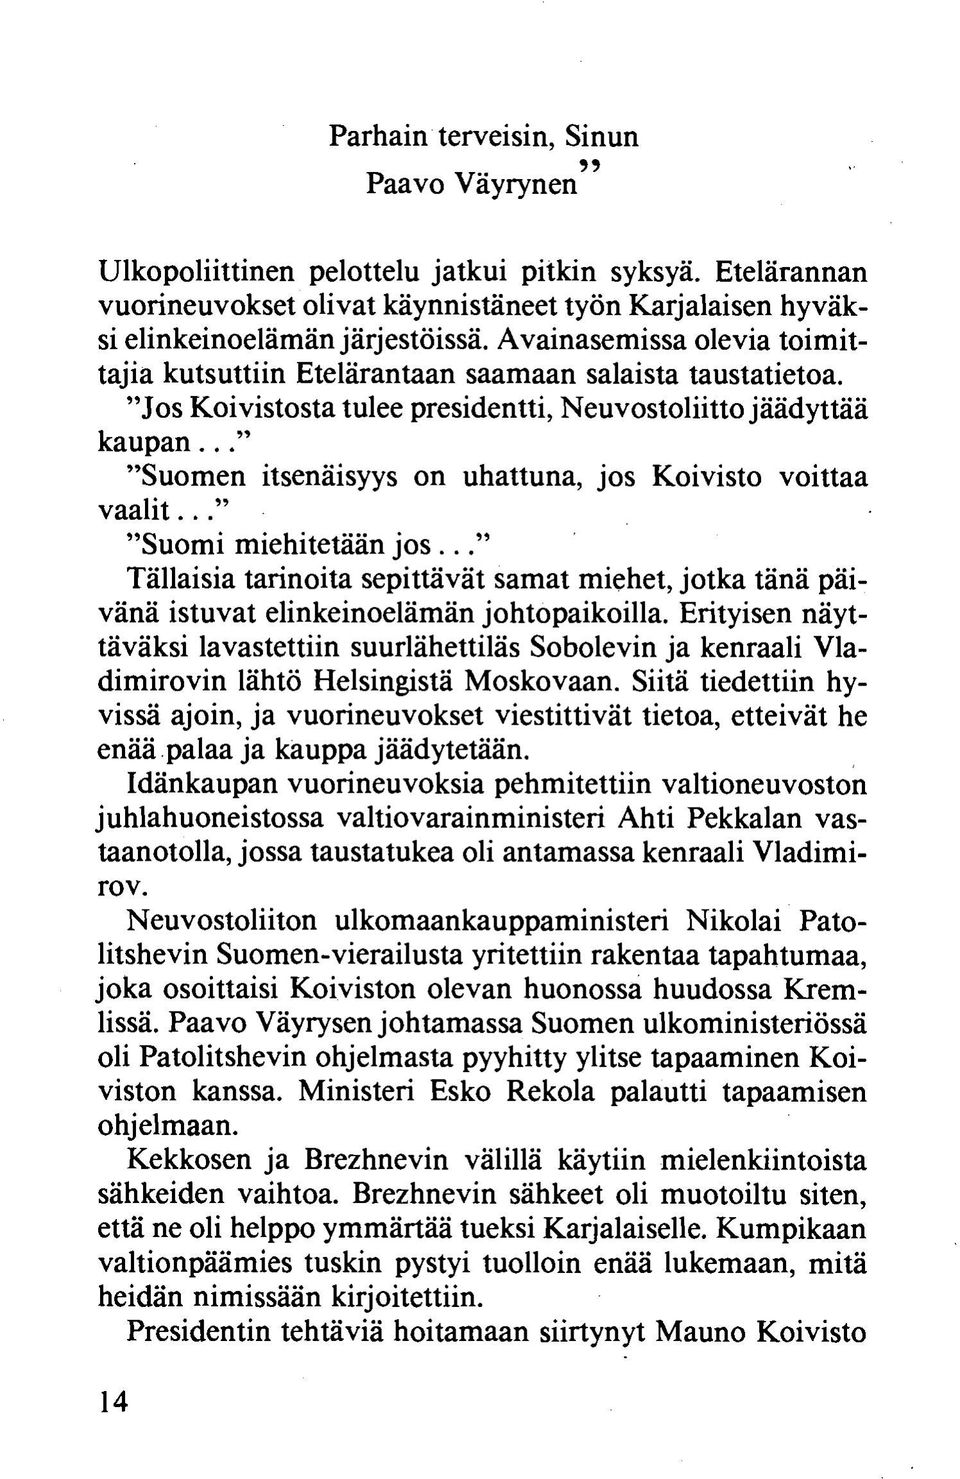 .. "Suomen itsenäisyys on uhattuna, jos Koivisto voittaa vaalit... "Suomi miehitetään jo s... Tällaisia tarinoita sepittävät samat miehet, jotka tänä päivänä istuvat elinkeinoelämän johtopaikoilla.